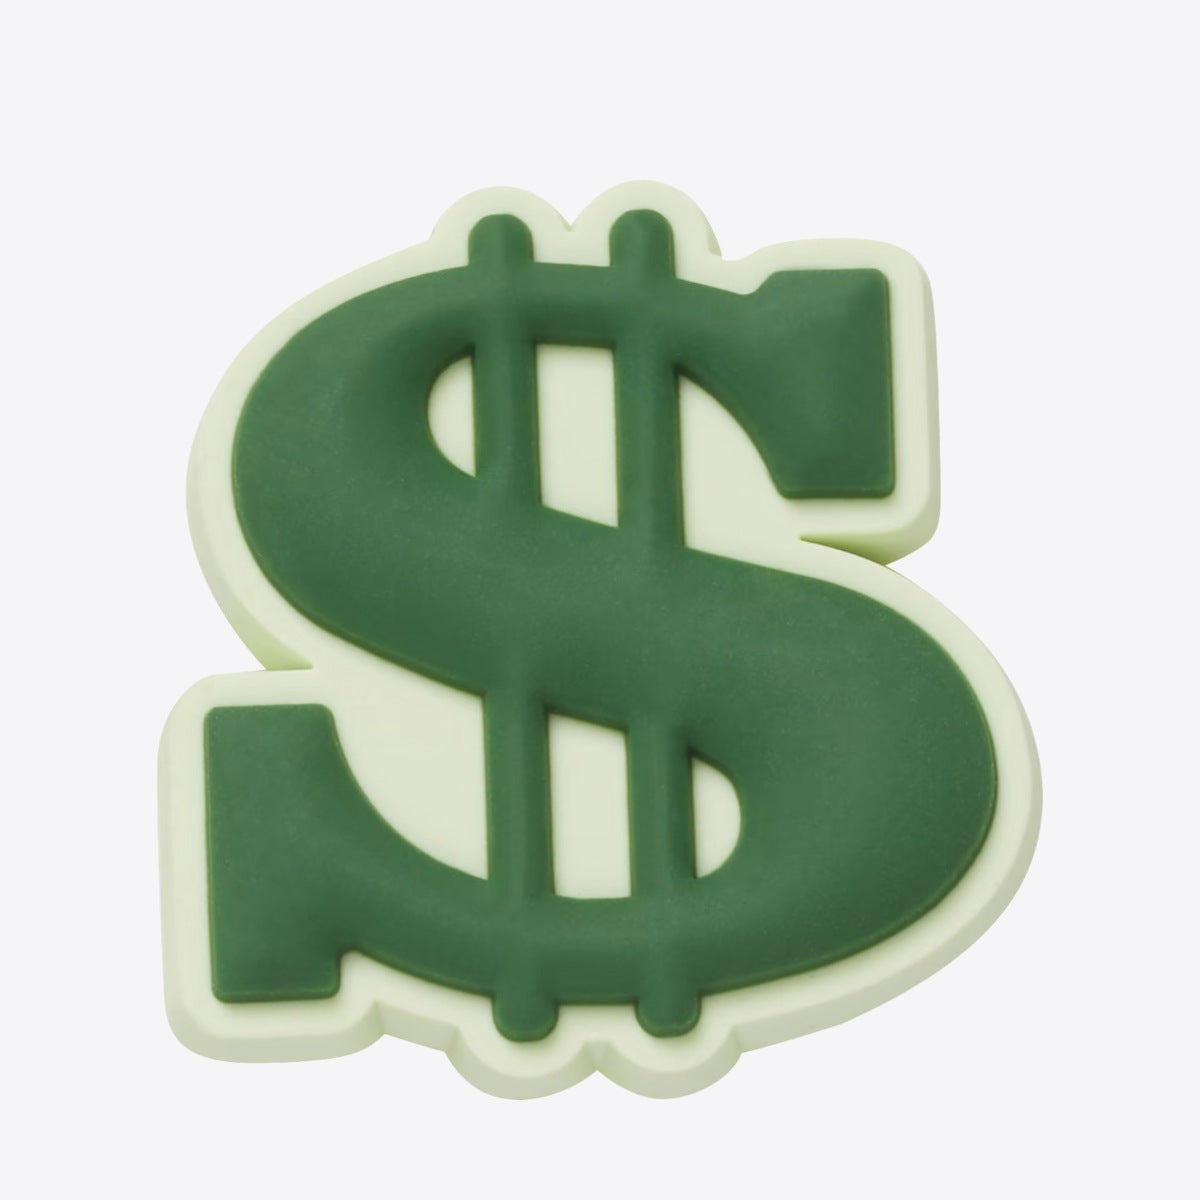 CROCS Jibbitz Dollar Sign Dollar Sign - Image 1